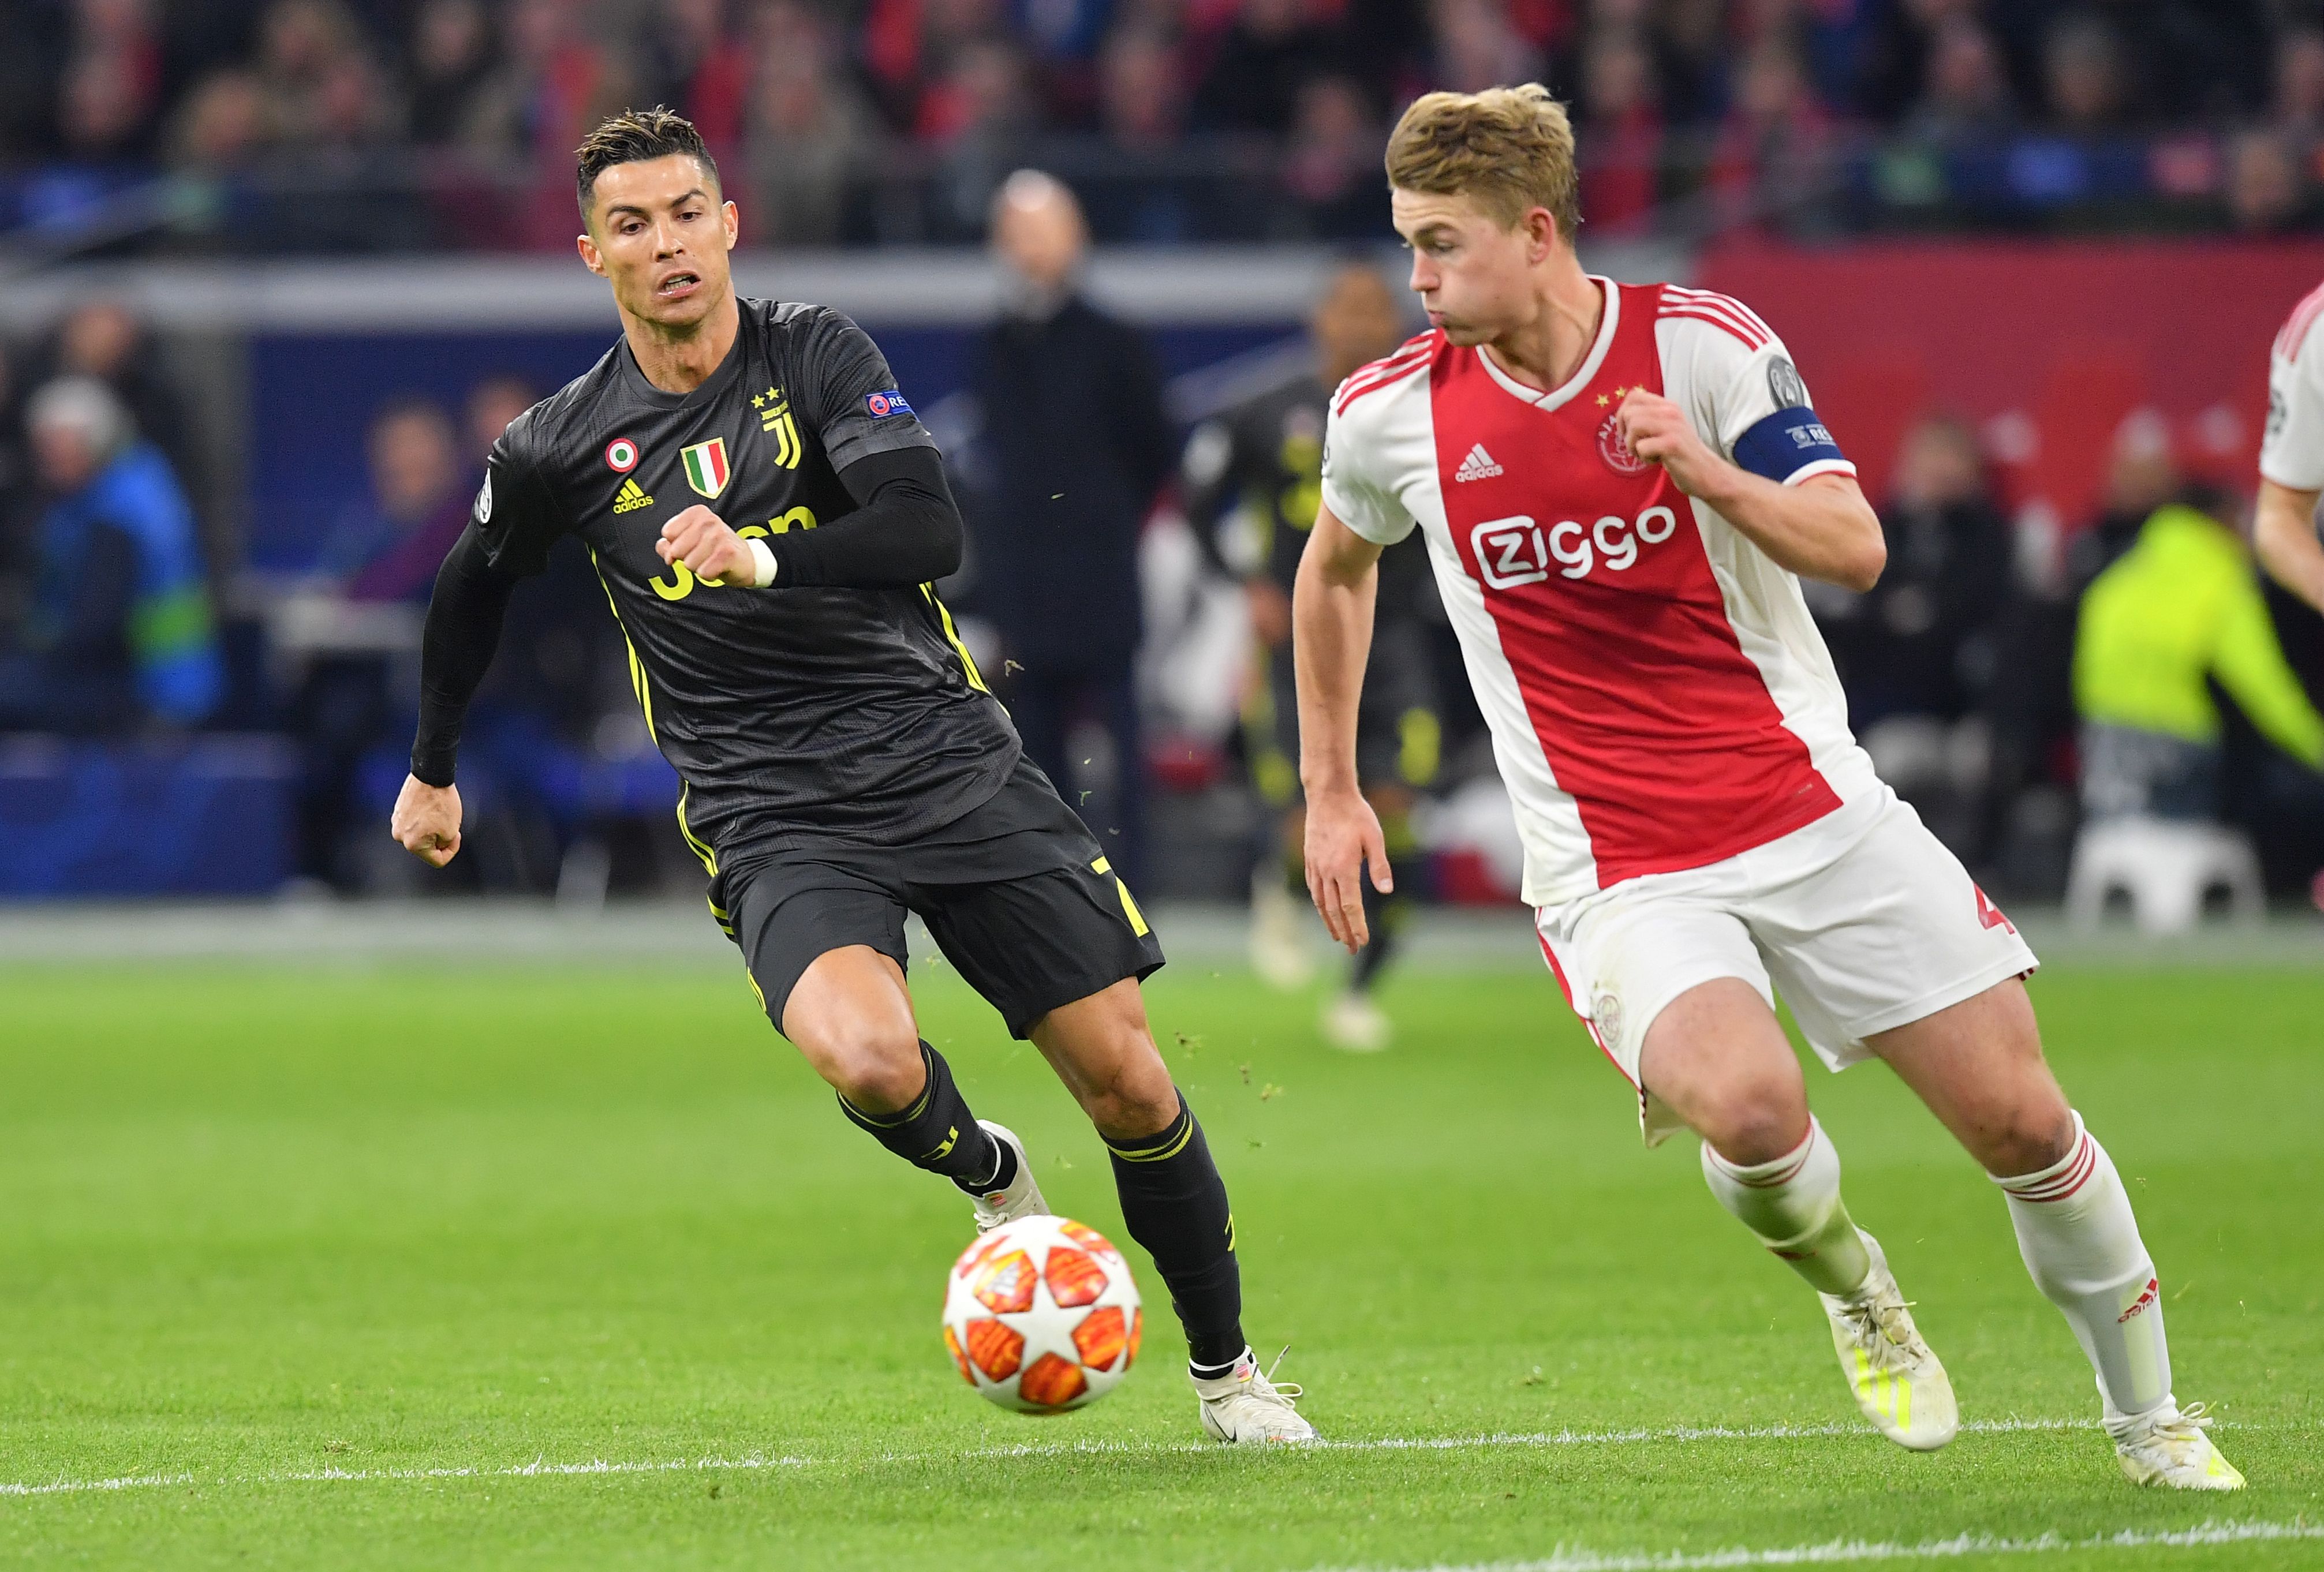 La Juventus de Turín hizo oficial el fichaje del holandés Matthijs De Ligt, quien llega al cuadro turinés procedente del Ajax en una operación de €85.5 millones y con un contrato hasta el 2024. Ahora compartirá vestuario con Cristiano Ronaldo (Foto Prensa Libre: AFP)